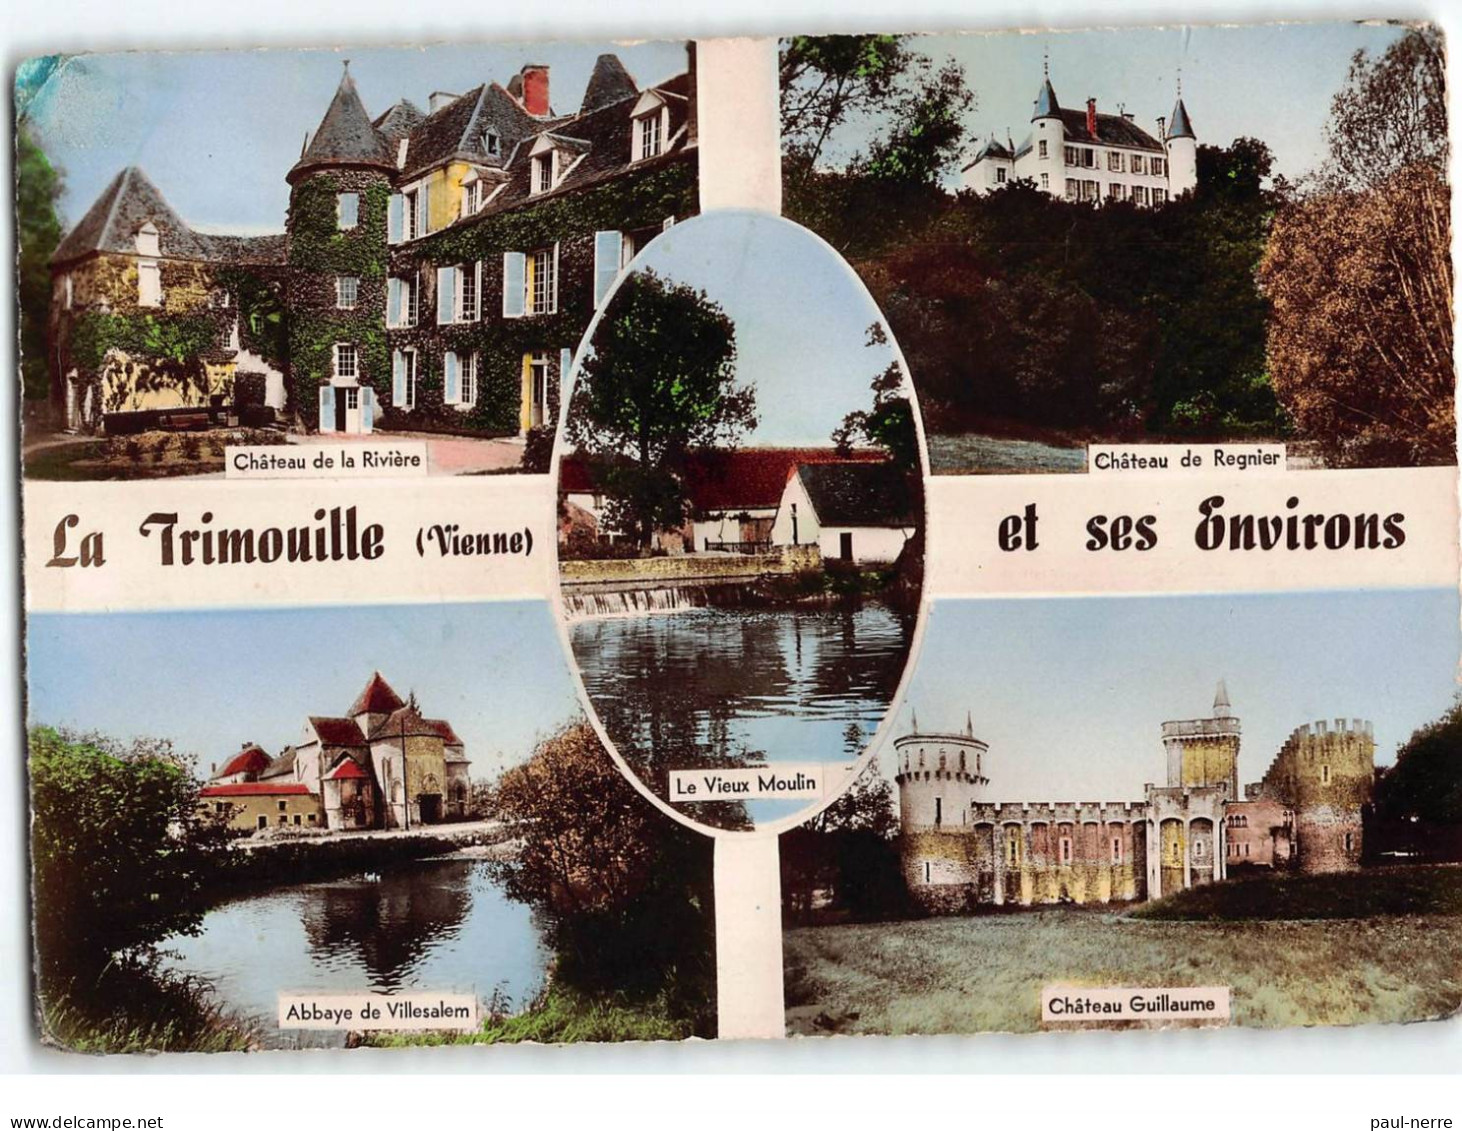 LA TRIMOUILLE, Château De La Rivière, Guillaume Et De Regnier, Abbaye De Villesalem, Le Vieux Moulin - état - La Trimouille